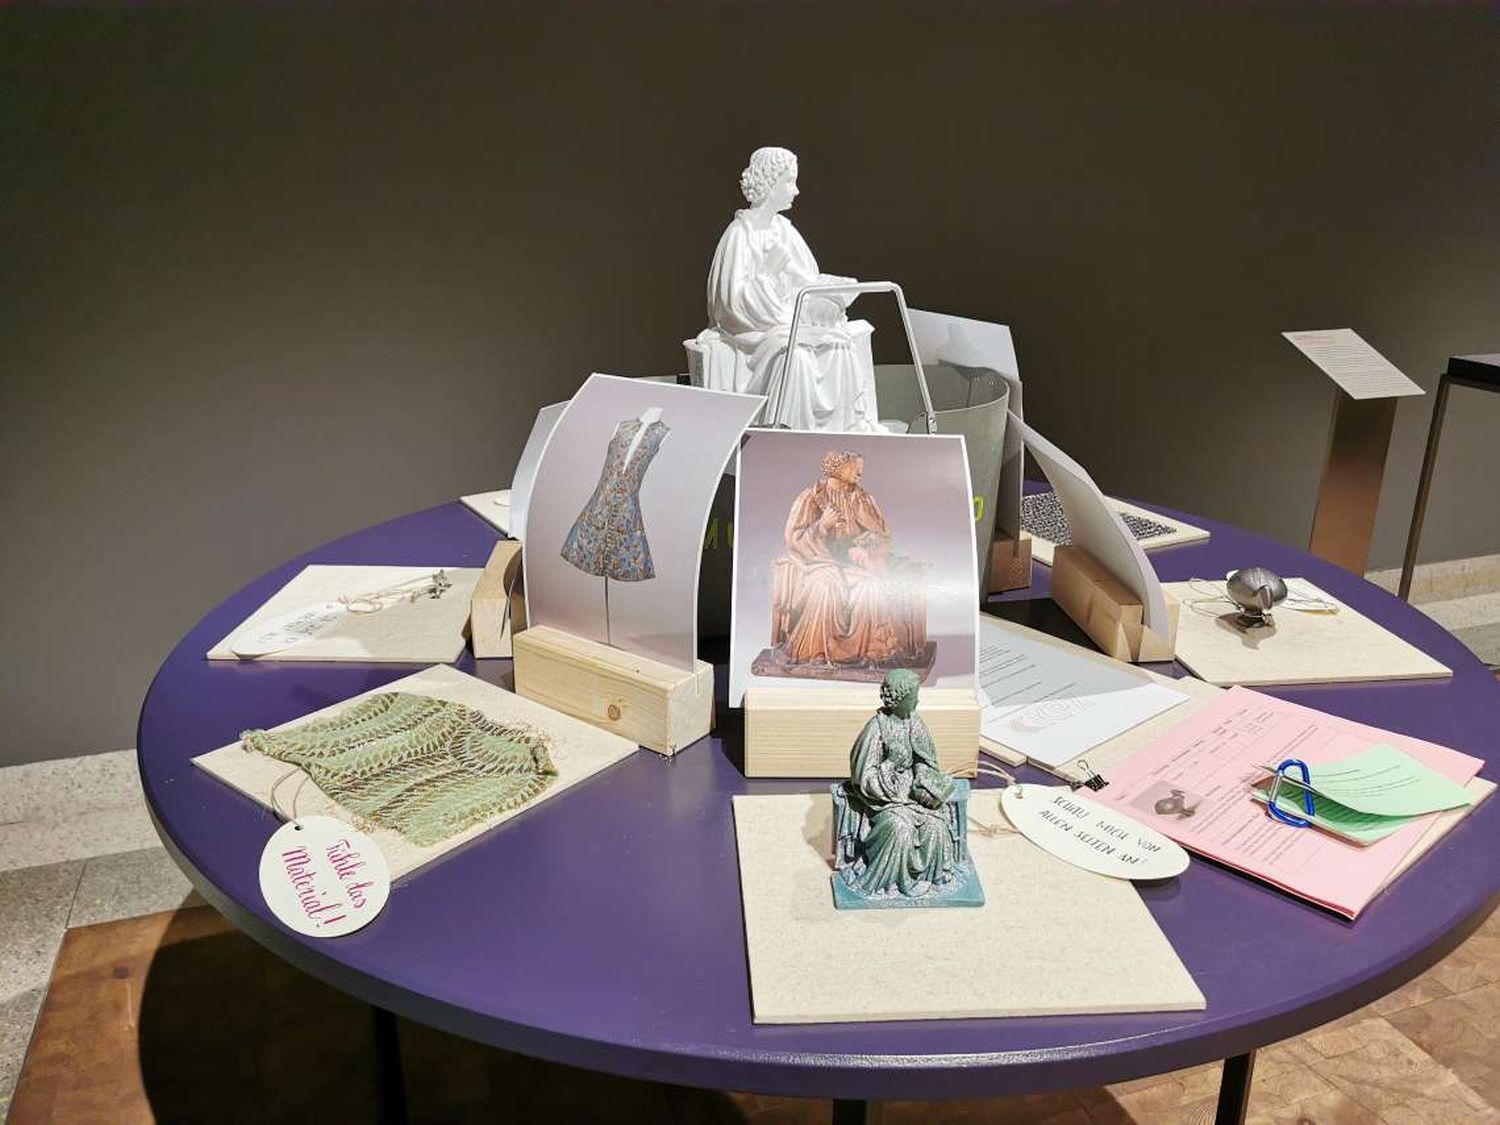 Auf einem Tisch sind verschiedenen Objektfotos, 3D-Drucke, Materialproben und Lehrmaterialien ausgebreitet.